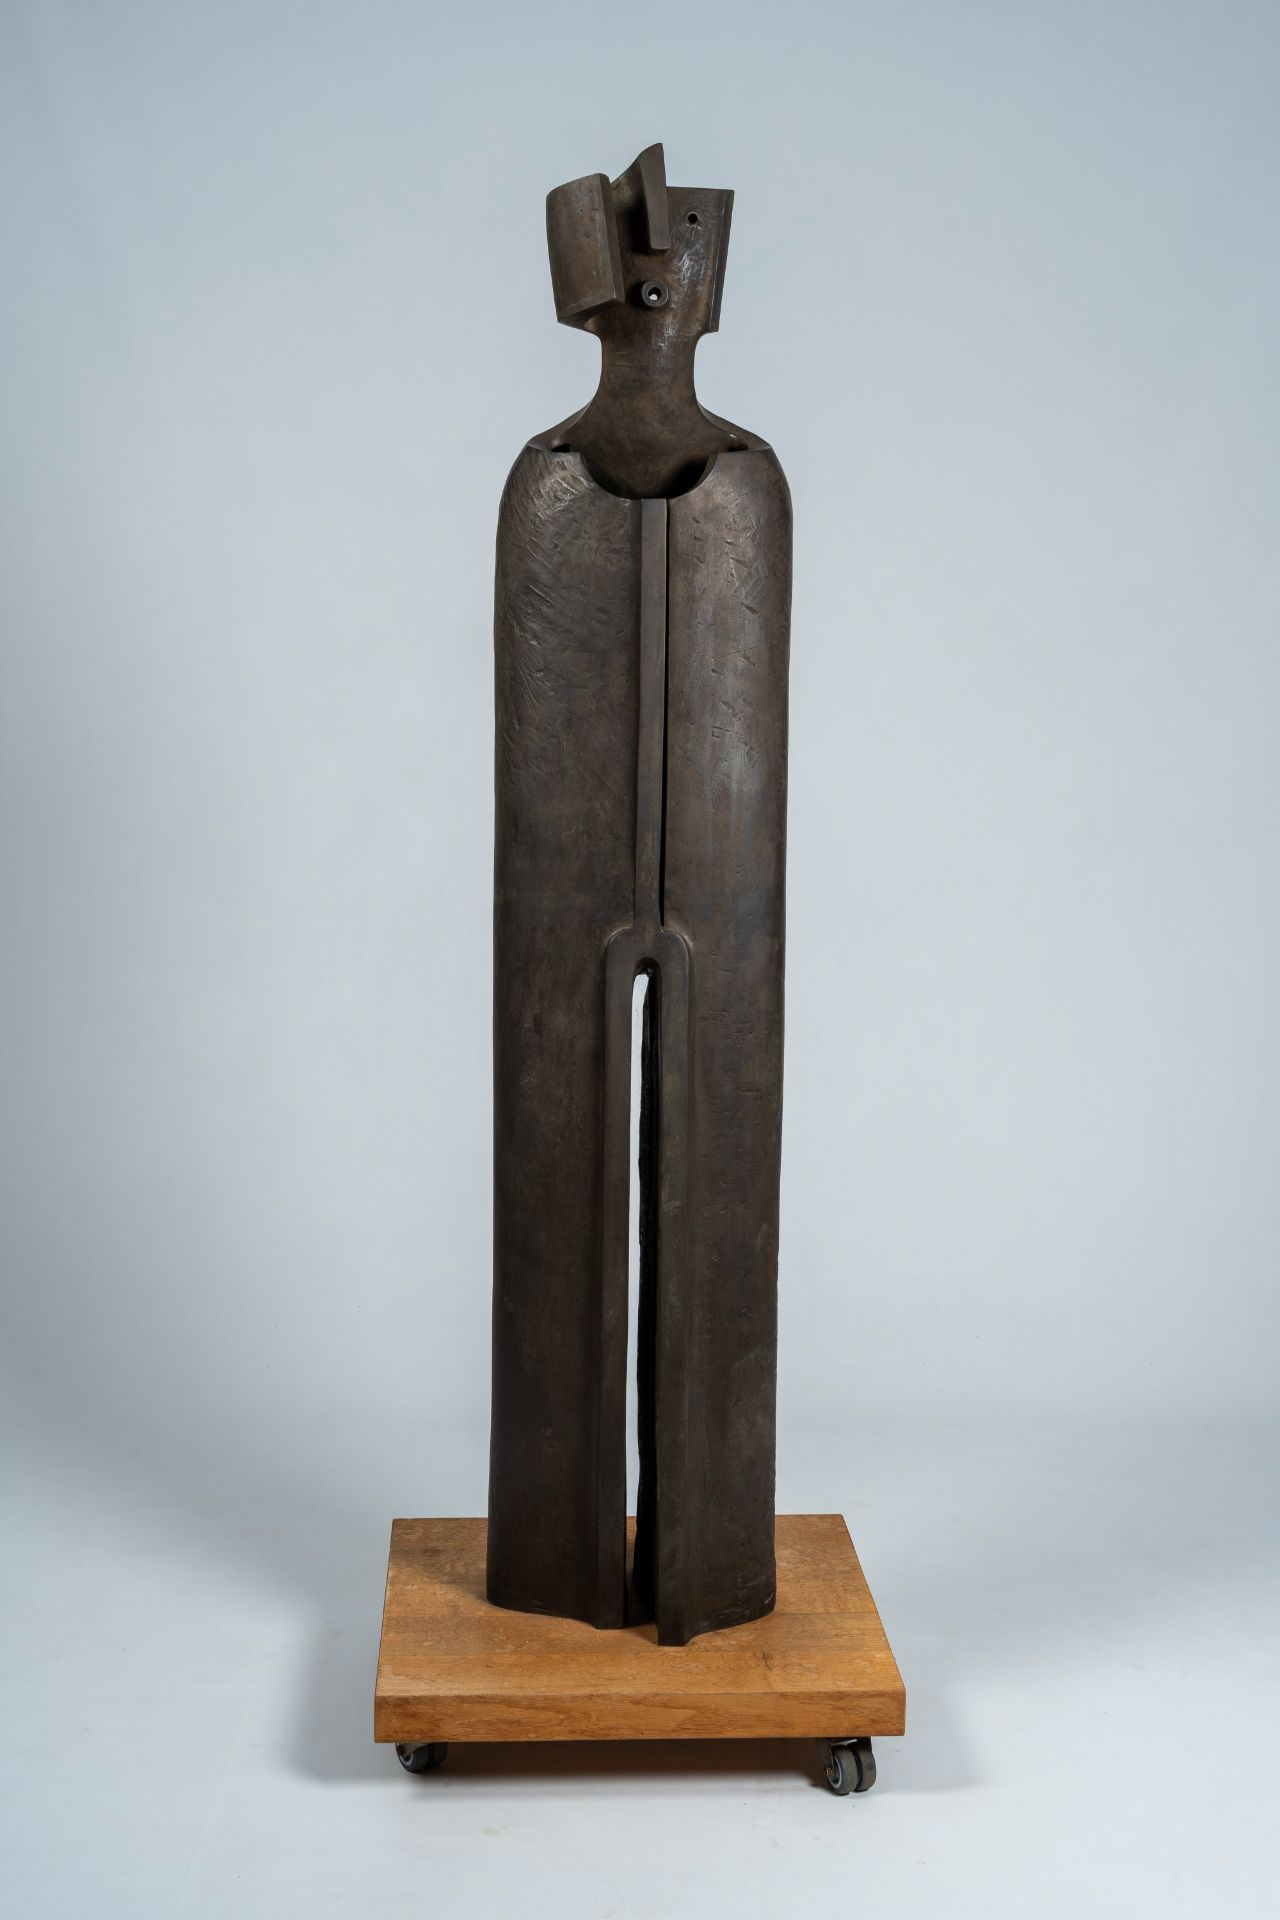 Jacques Tenenhaus (1947): 'The walking man', steel patinated bronze, foundry Landowski, ed. 1/8, dat - Image 3 of 9